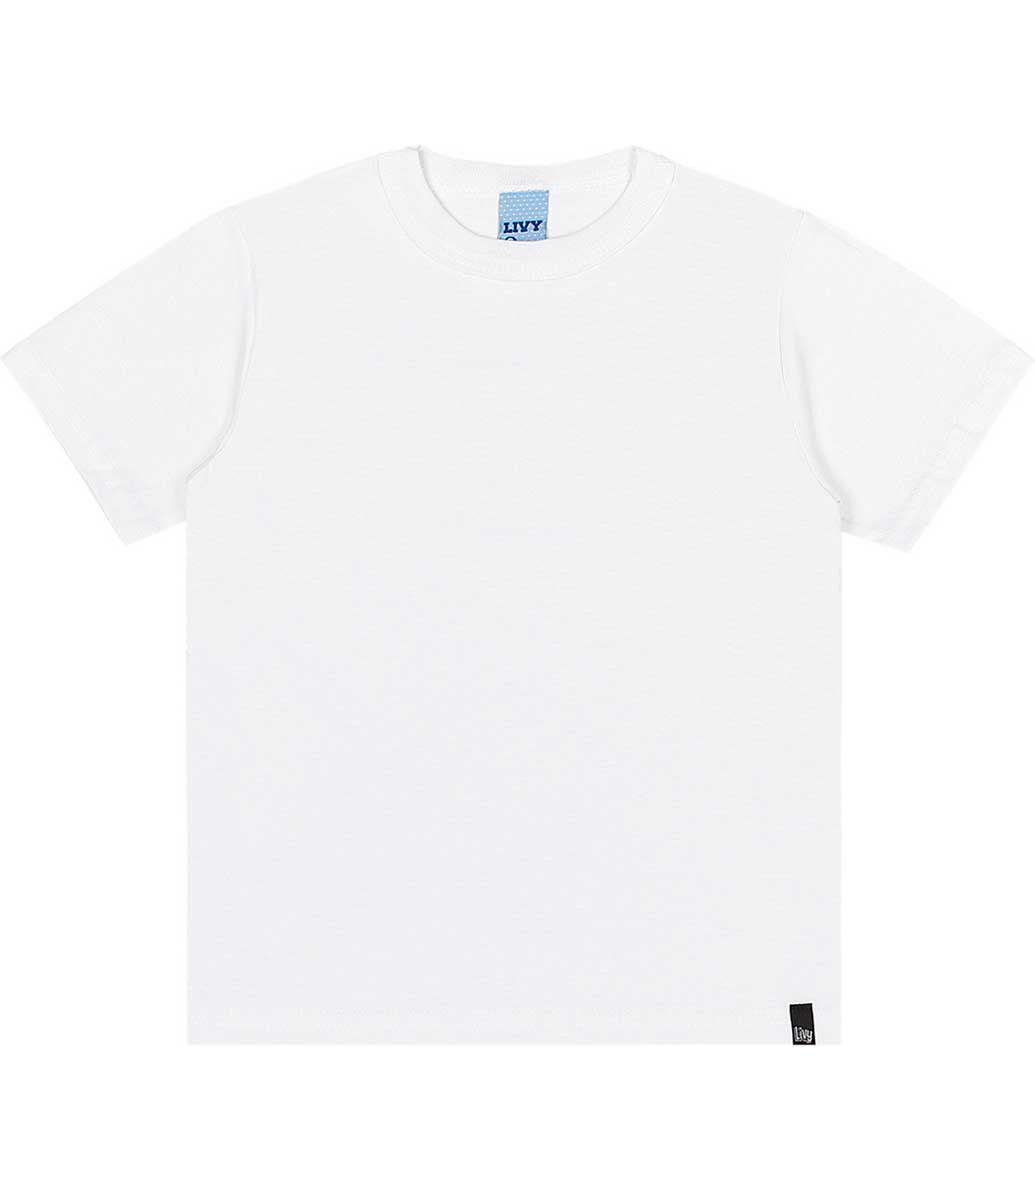 Camiseta Básica Manga Curta Juvenil Menino - Branco